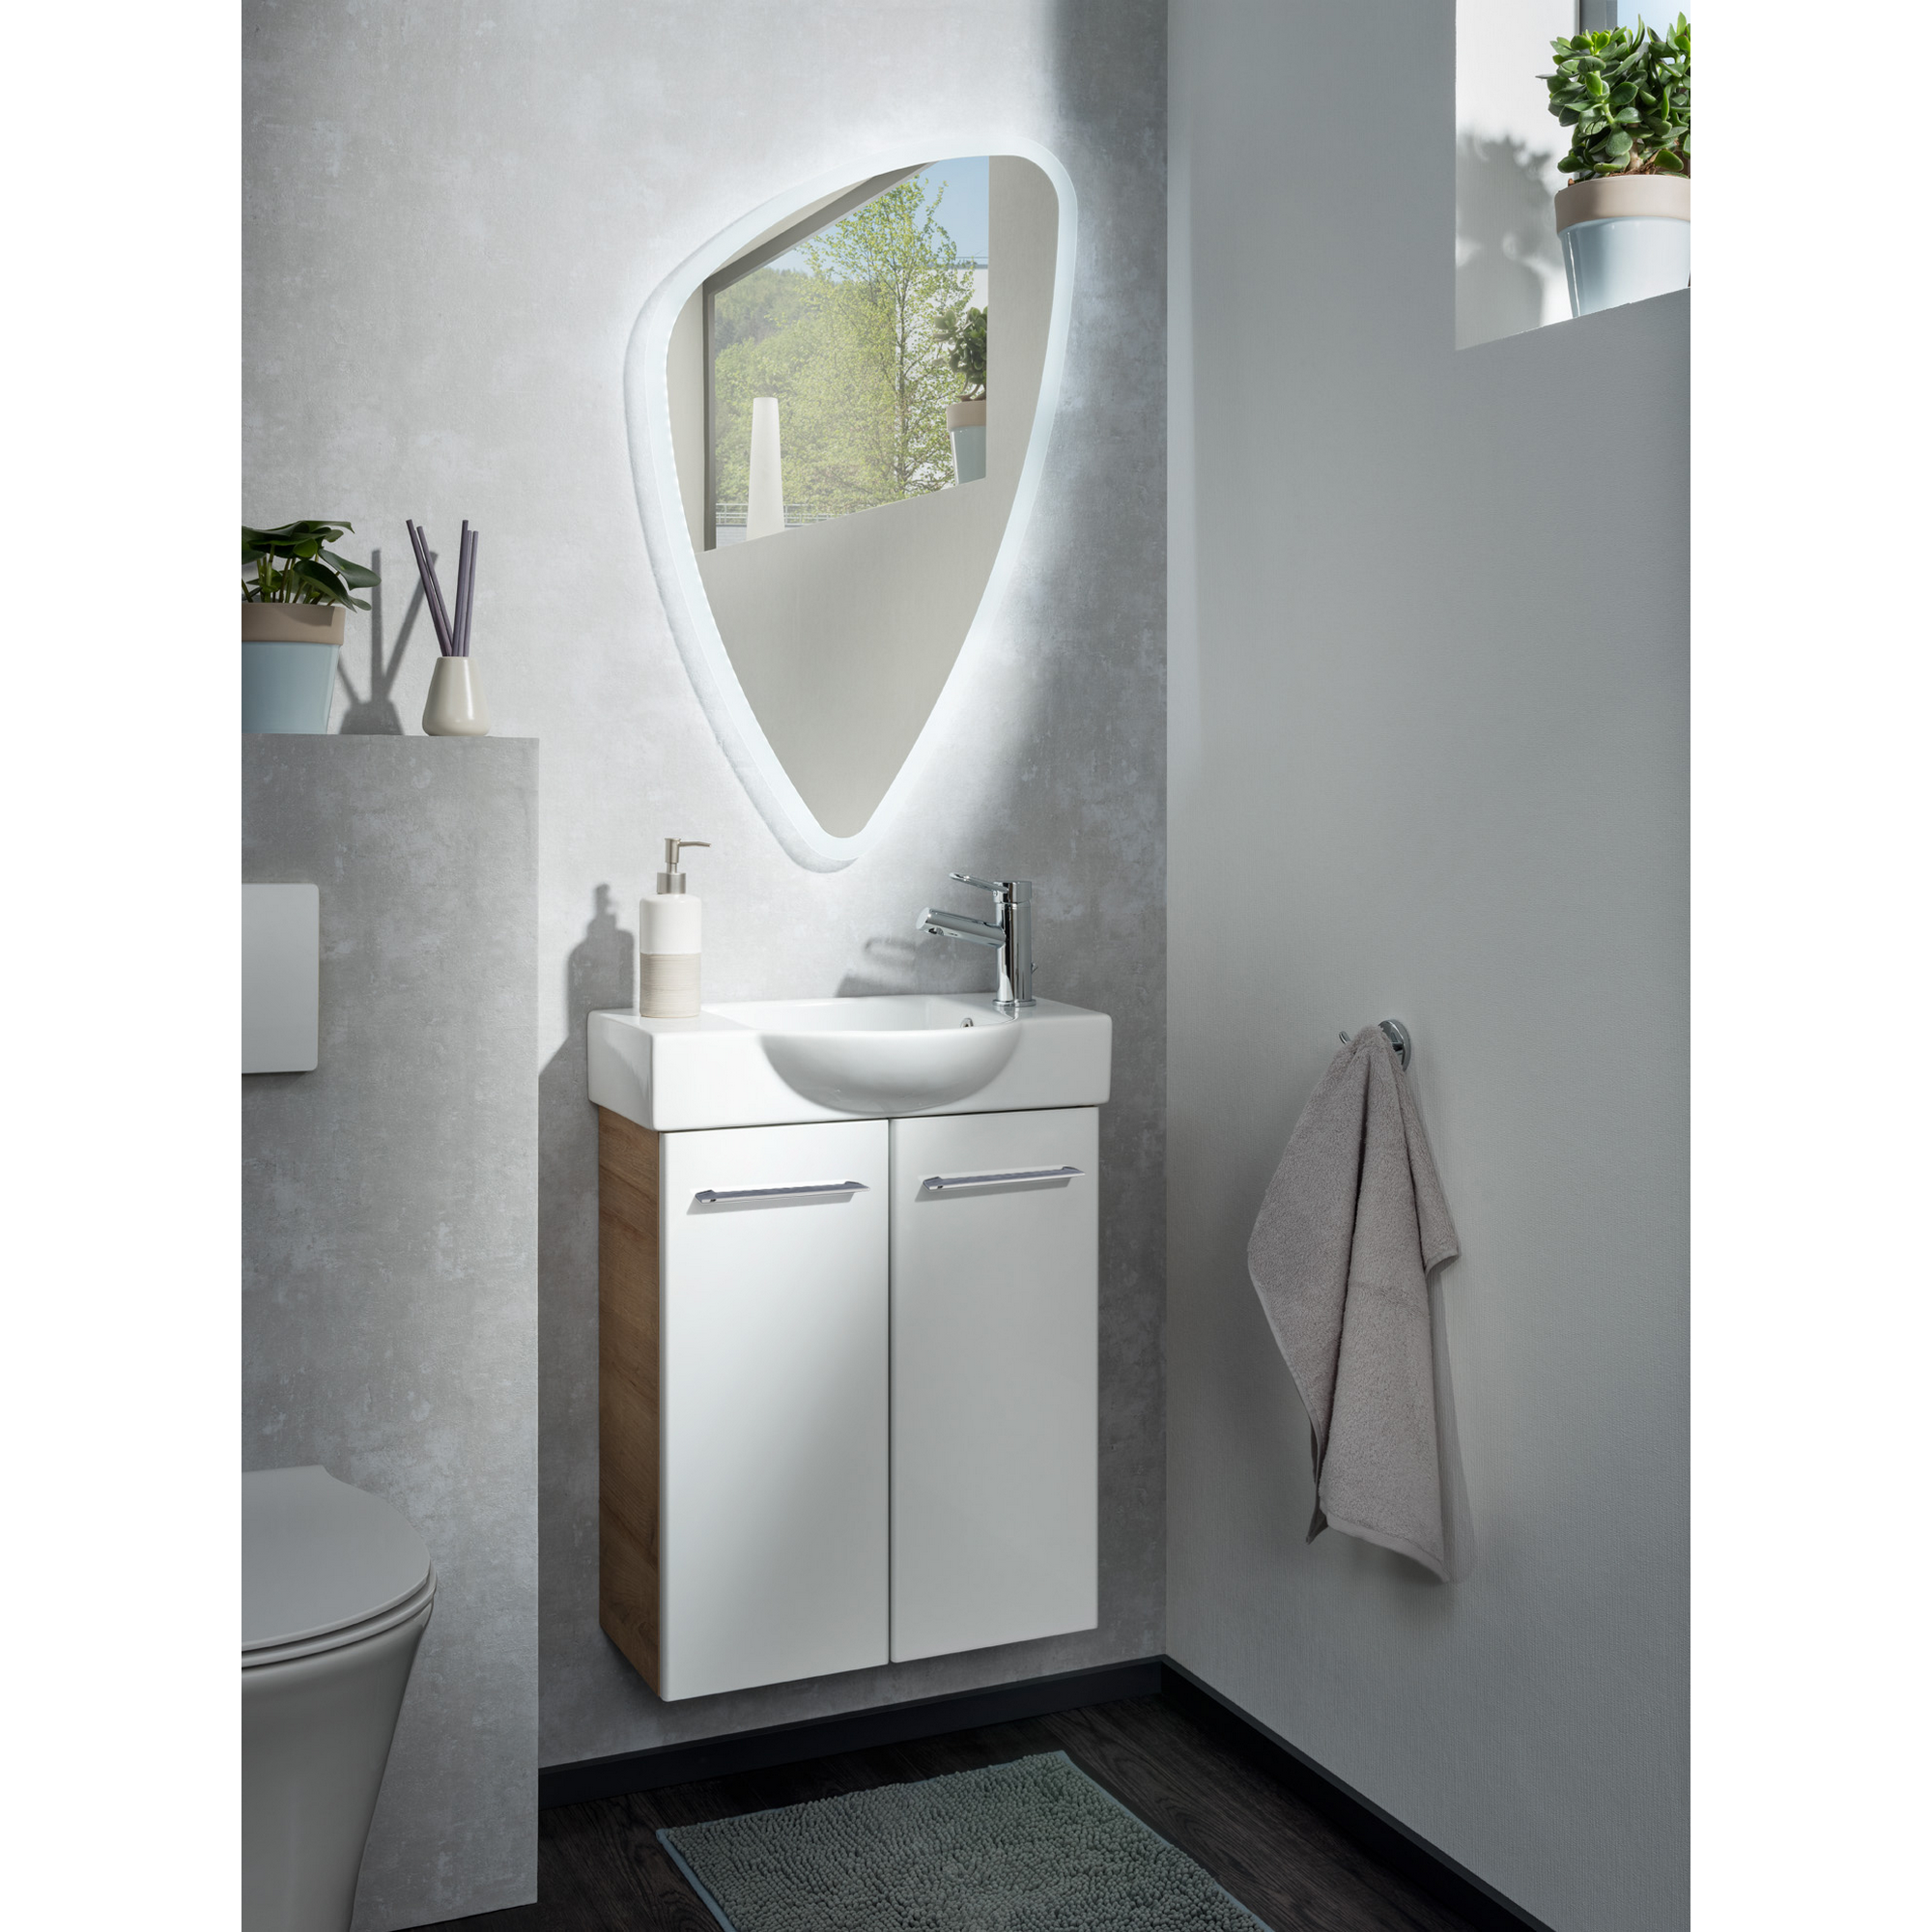 Waschtischunterschrank 'SBC' asteiche/weiß 52 x 60 x 24,3 cm + product picture